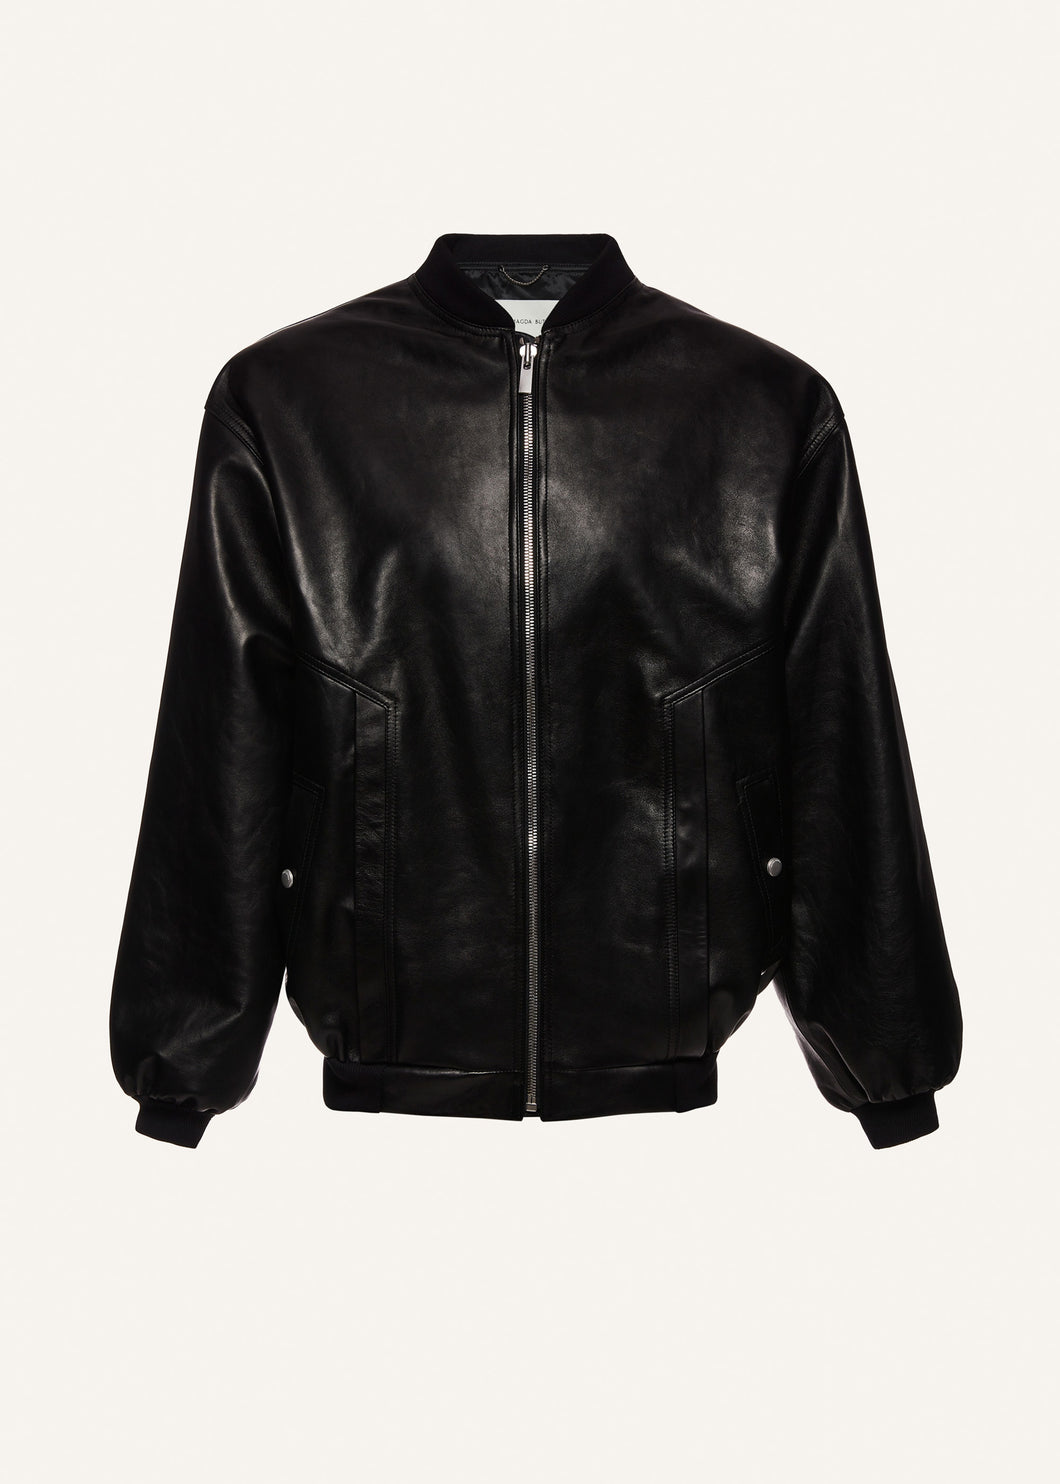 Oversized leather bomber jacket in black